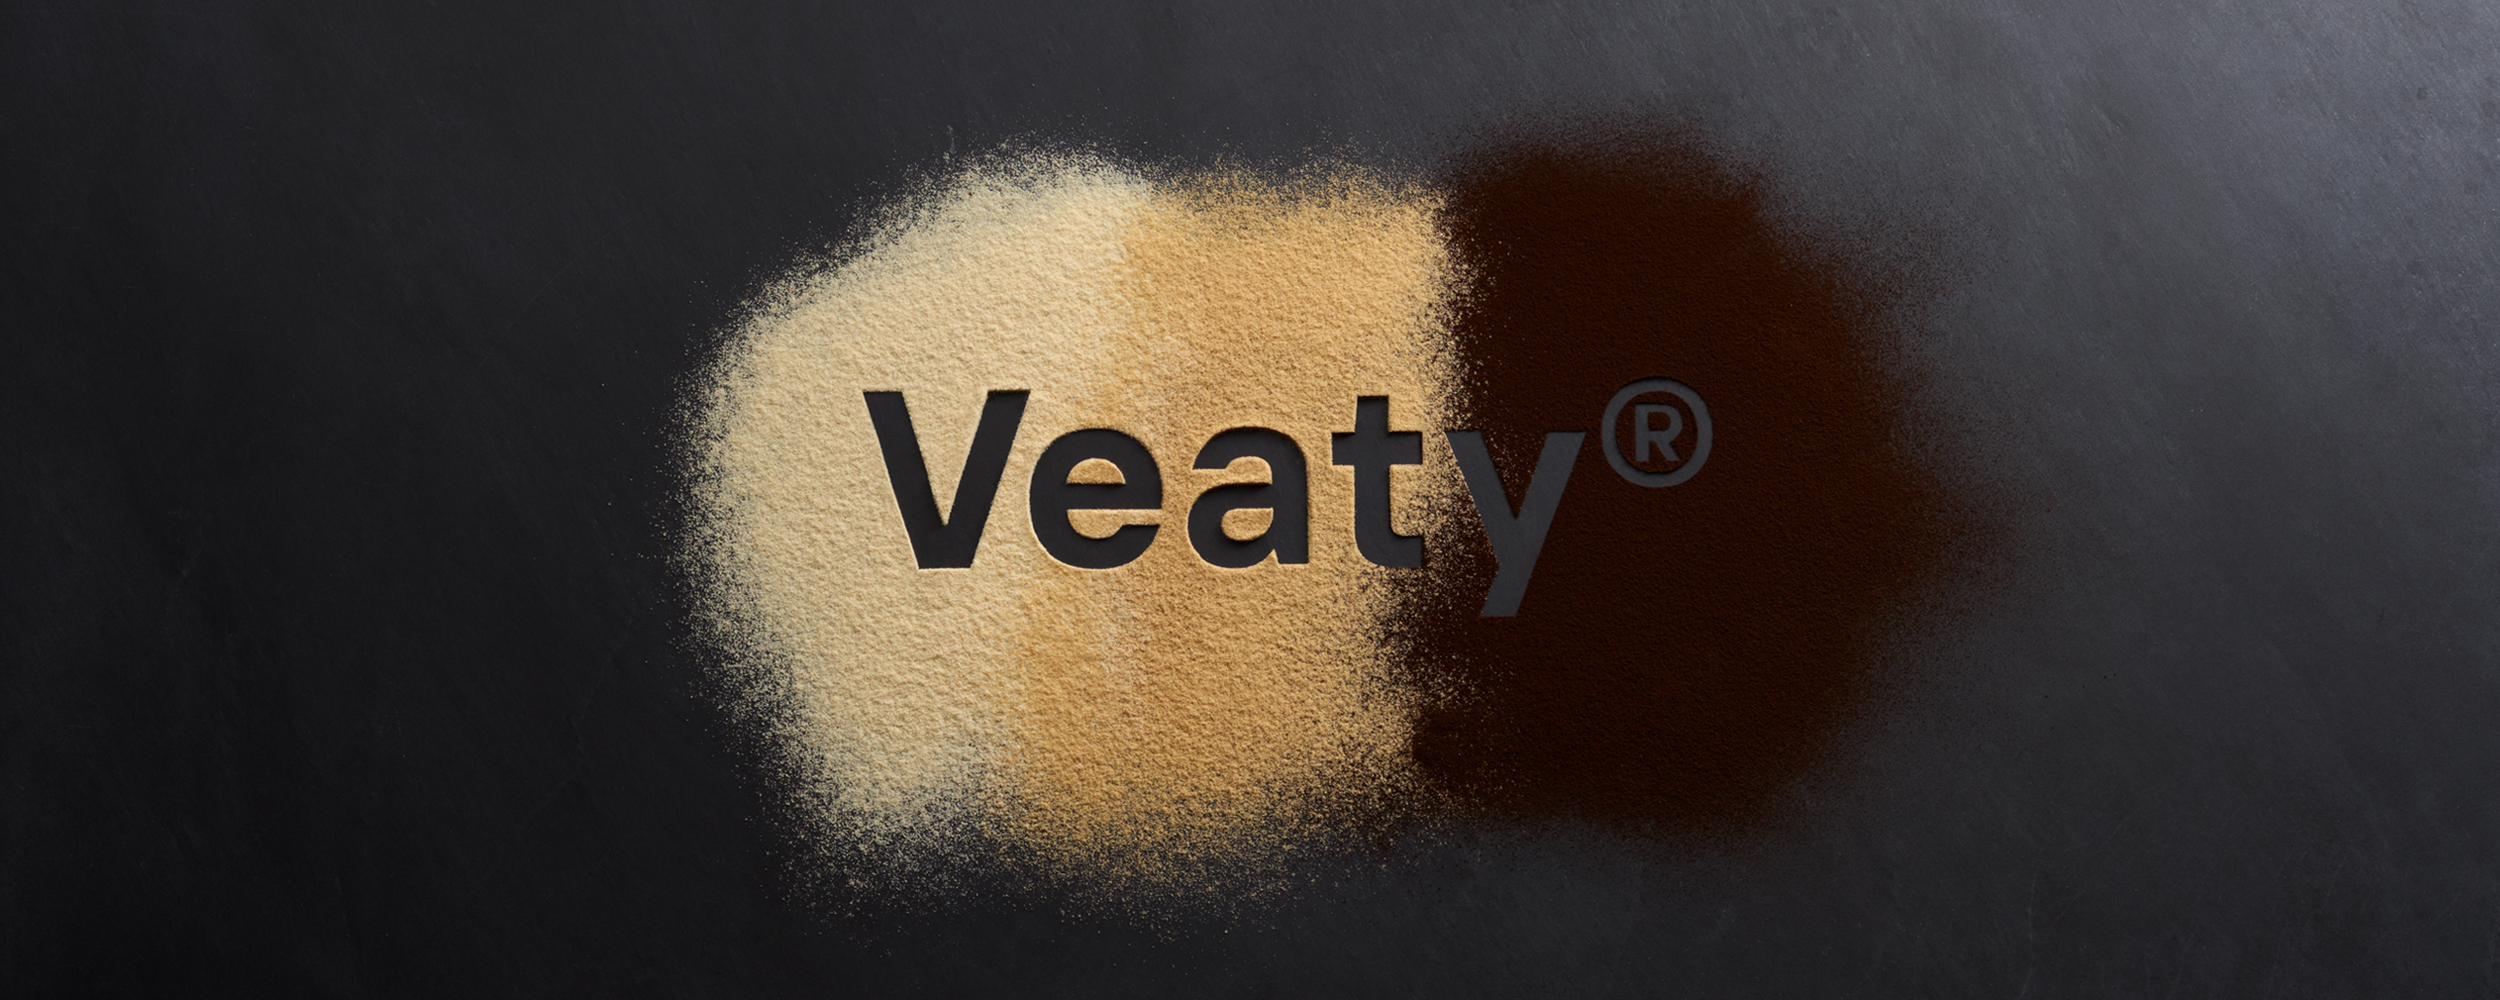 Veaty® Product Range